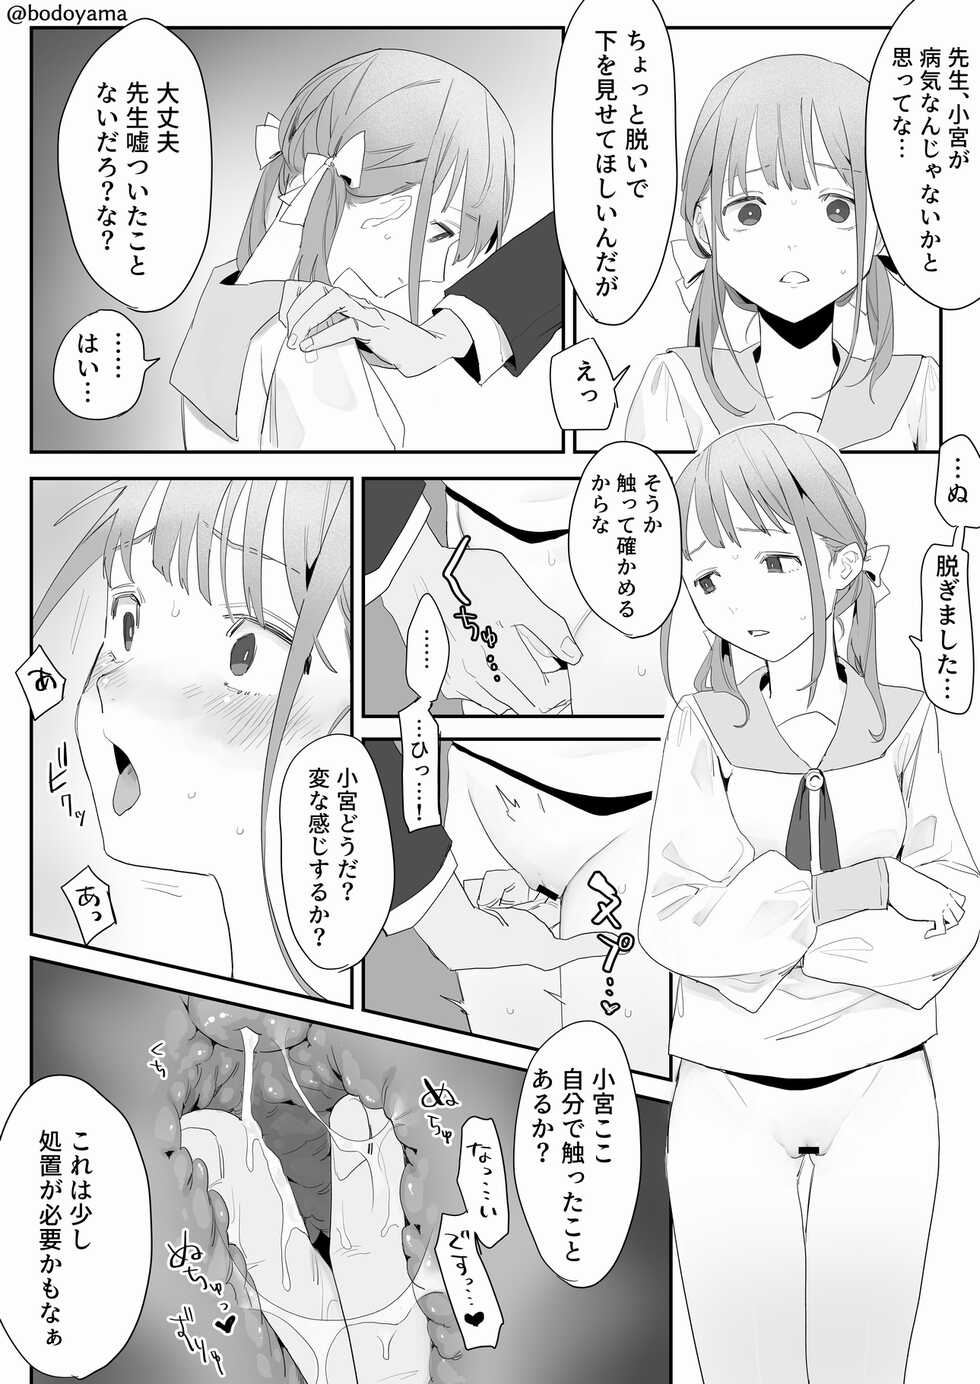 [Bodoyama] Sensei ni Damasarete Wake mo Wakaranai mama Shojo o Ubawarechau Ko - Page 3